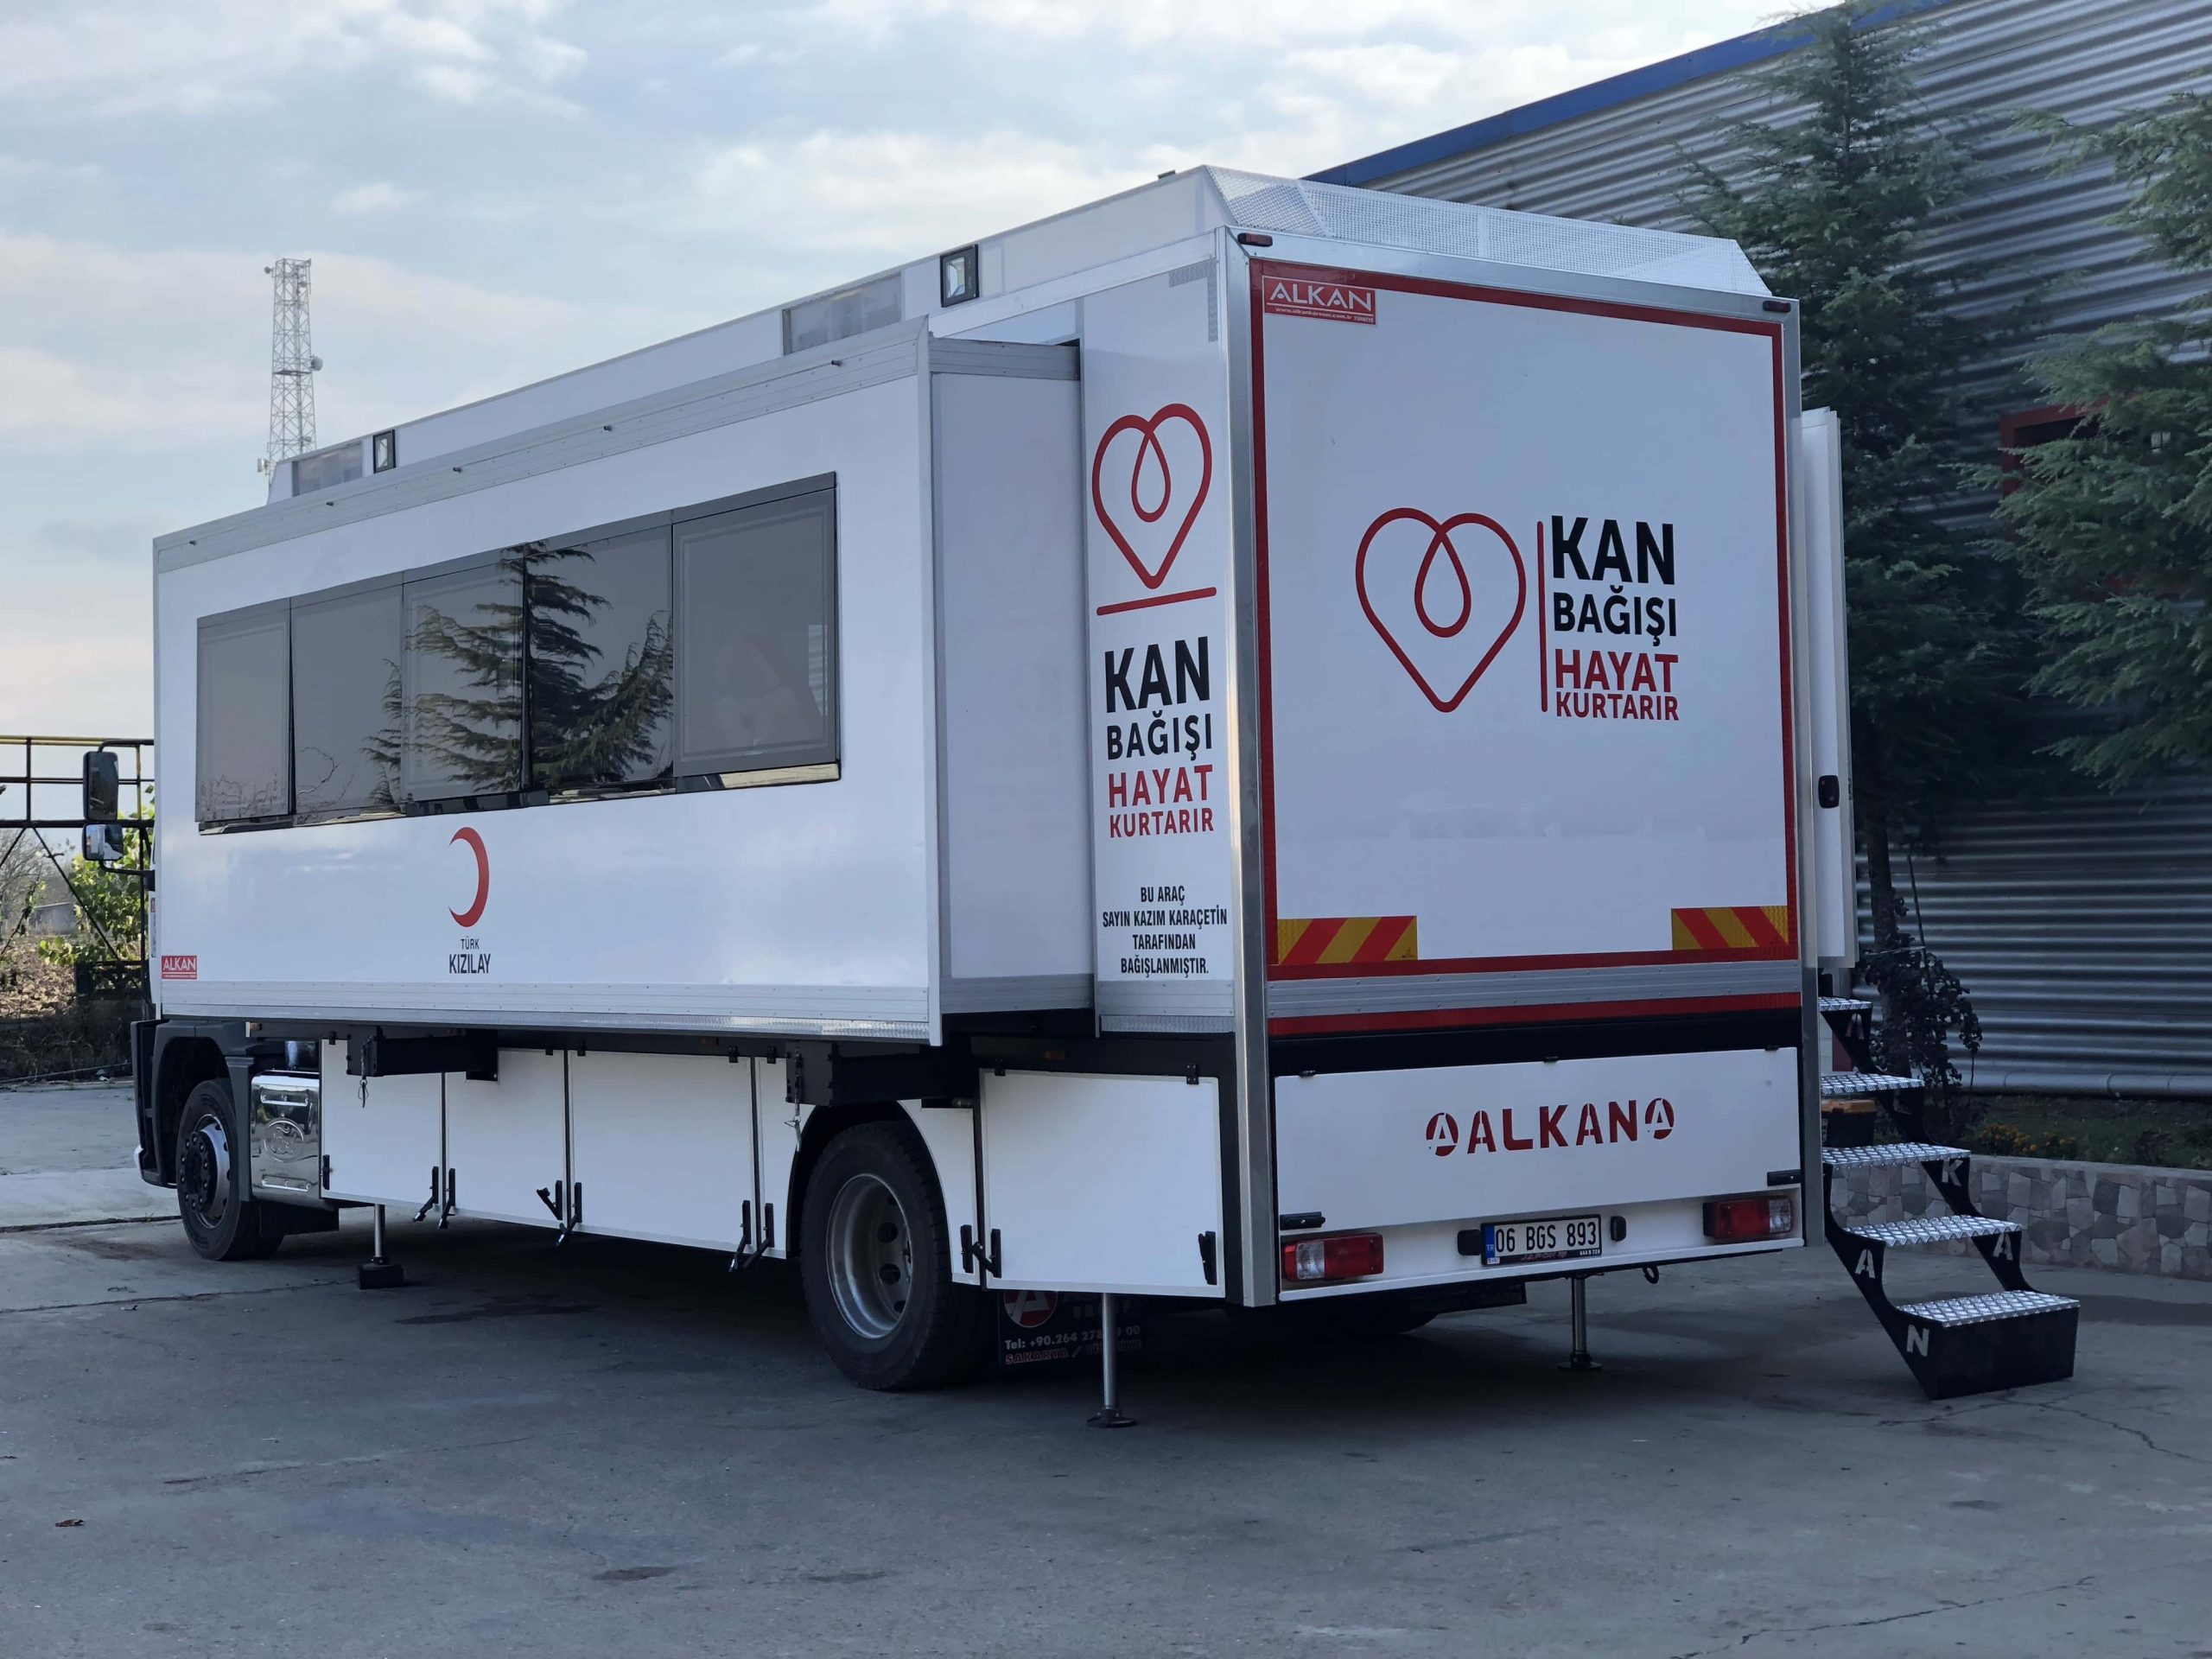 Mobile Blood Donation Trailer Vehicle Unit